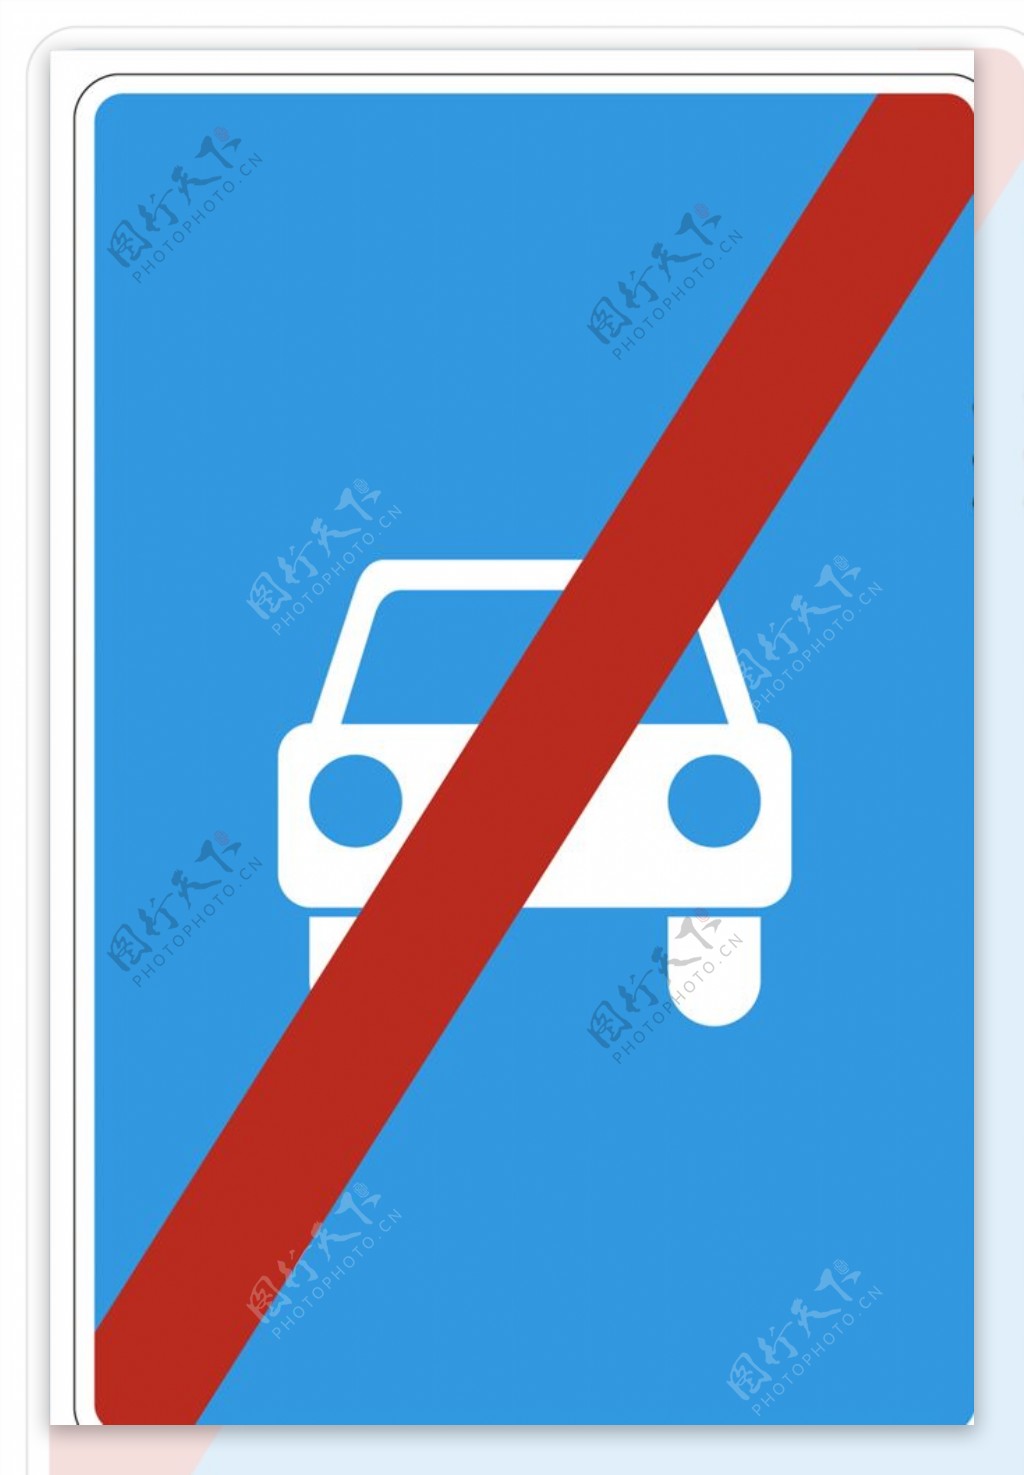 标志道路施工标示指示牌